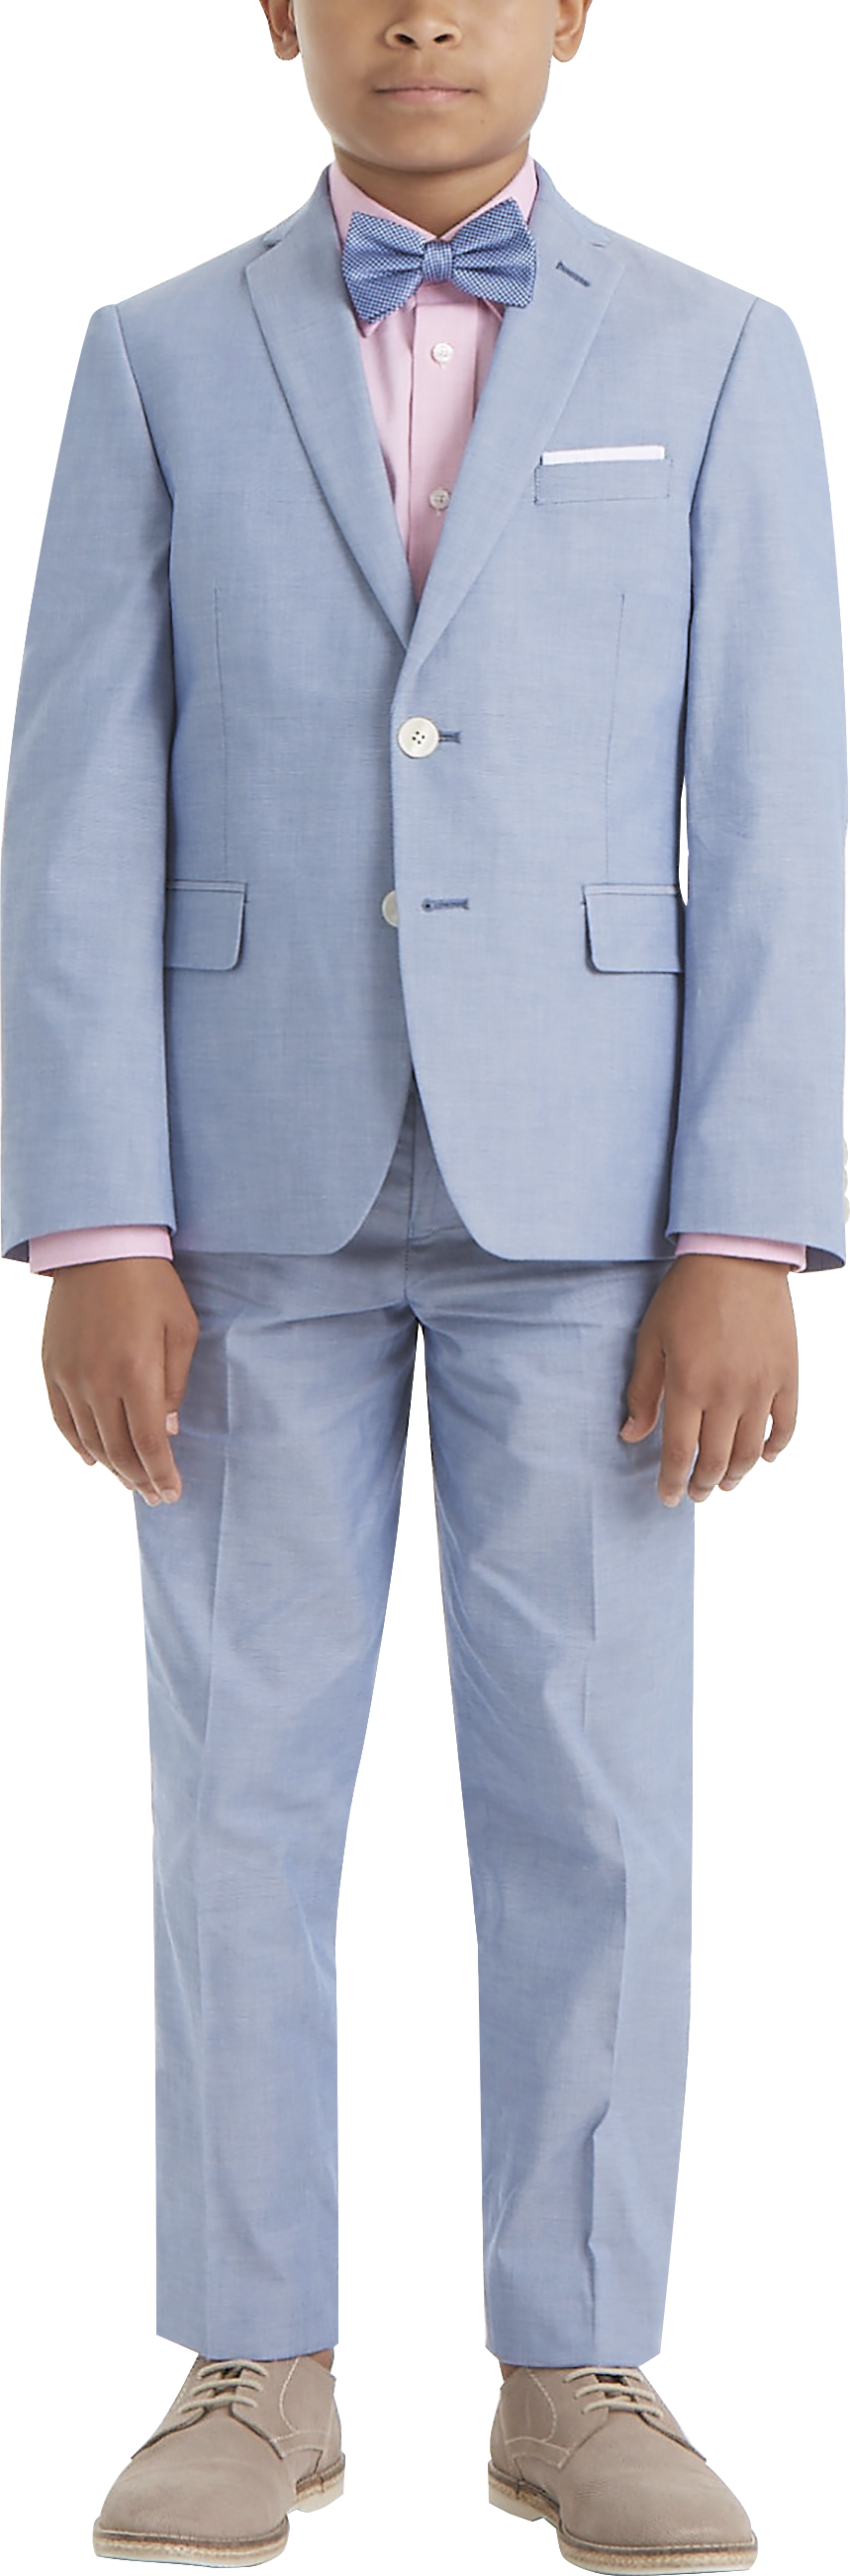 Lauren By Ralph Lauren Boys (Sizes 4-7) Suit Separates Pants, Light Blue Chambray